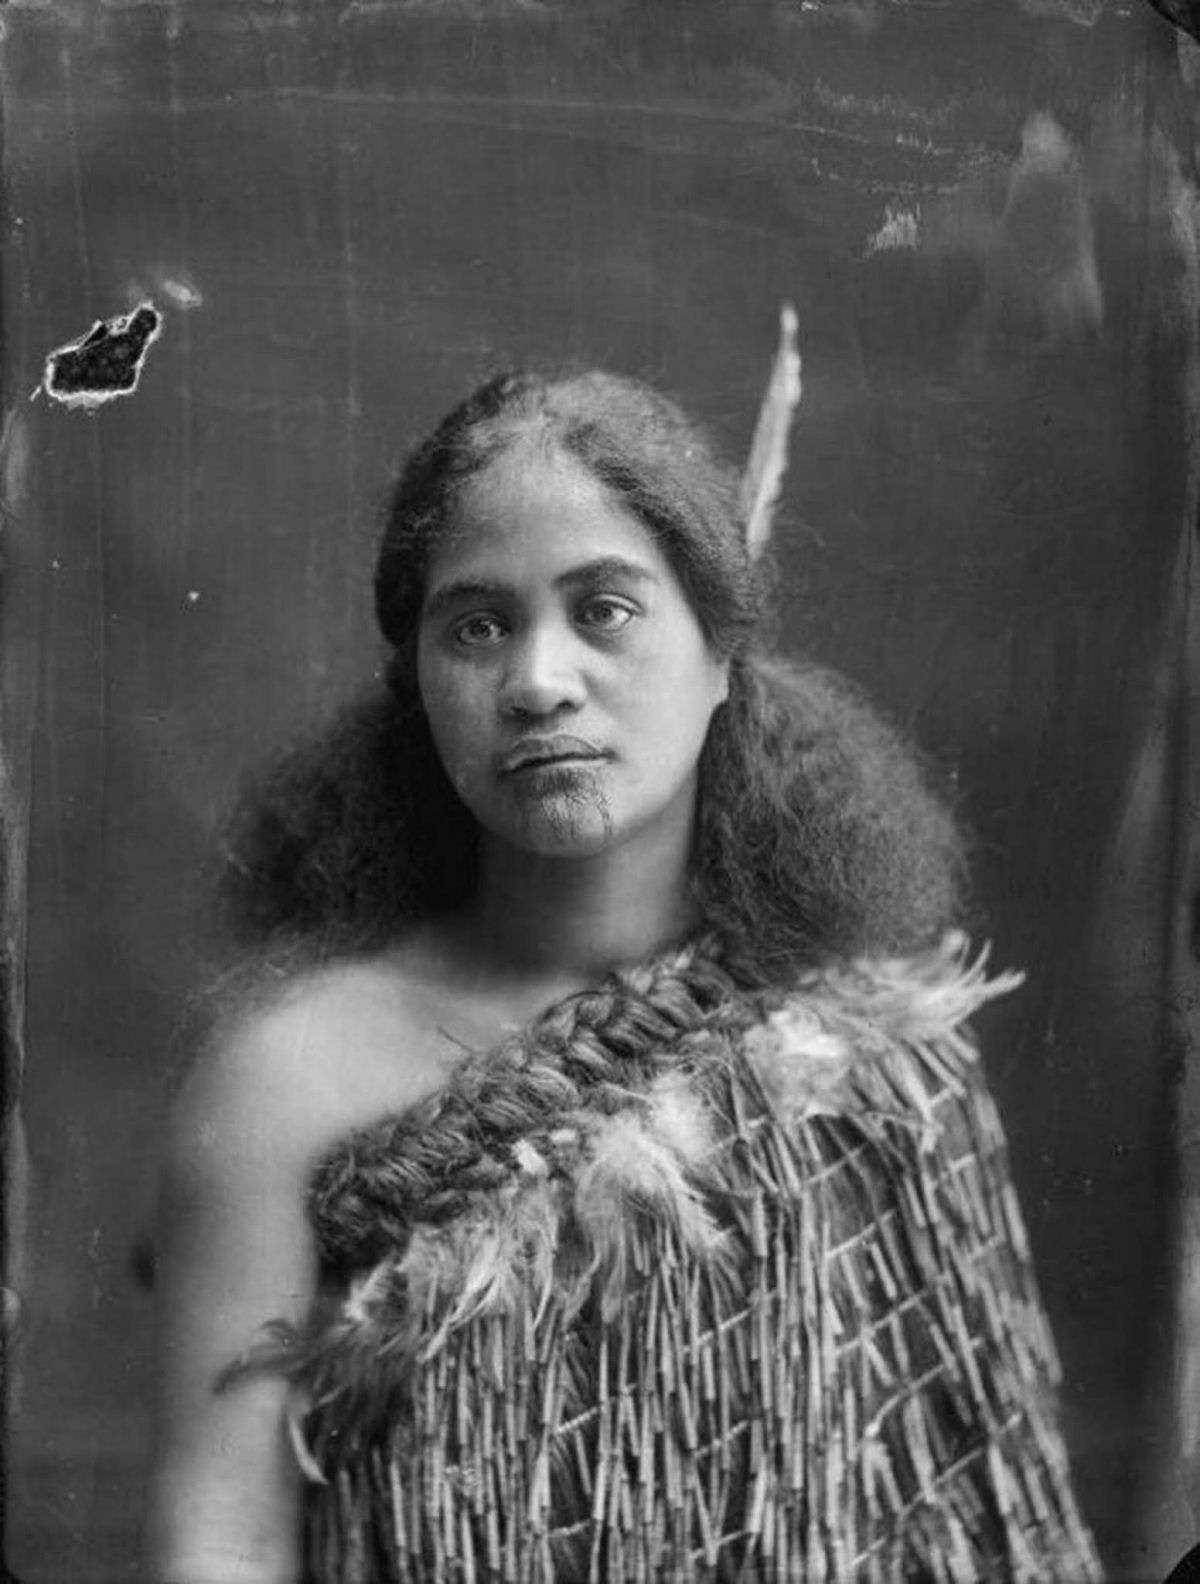 Antigas fotos de Maoris antes das tatuagens tā moko serem proibidas pelos britânicos 29